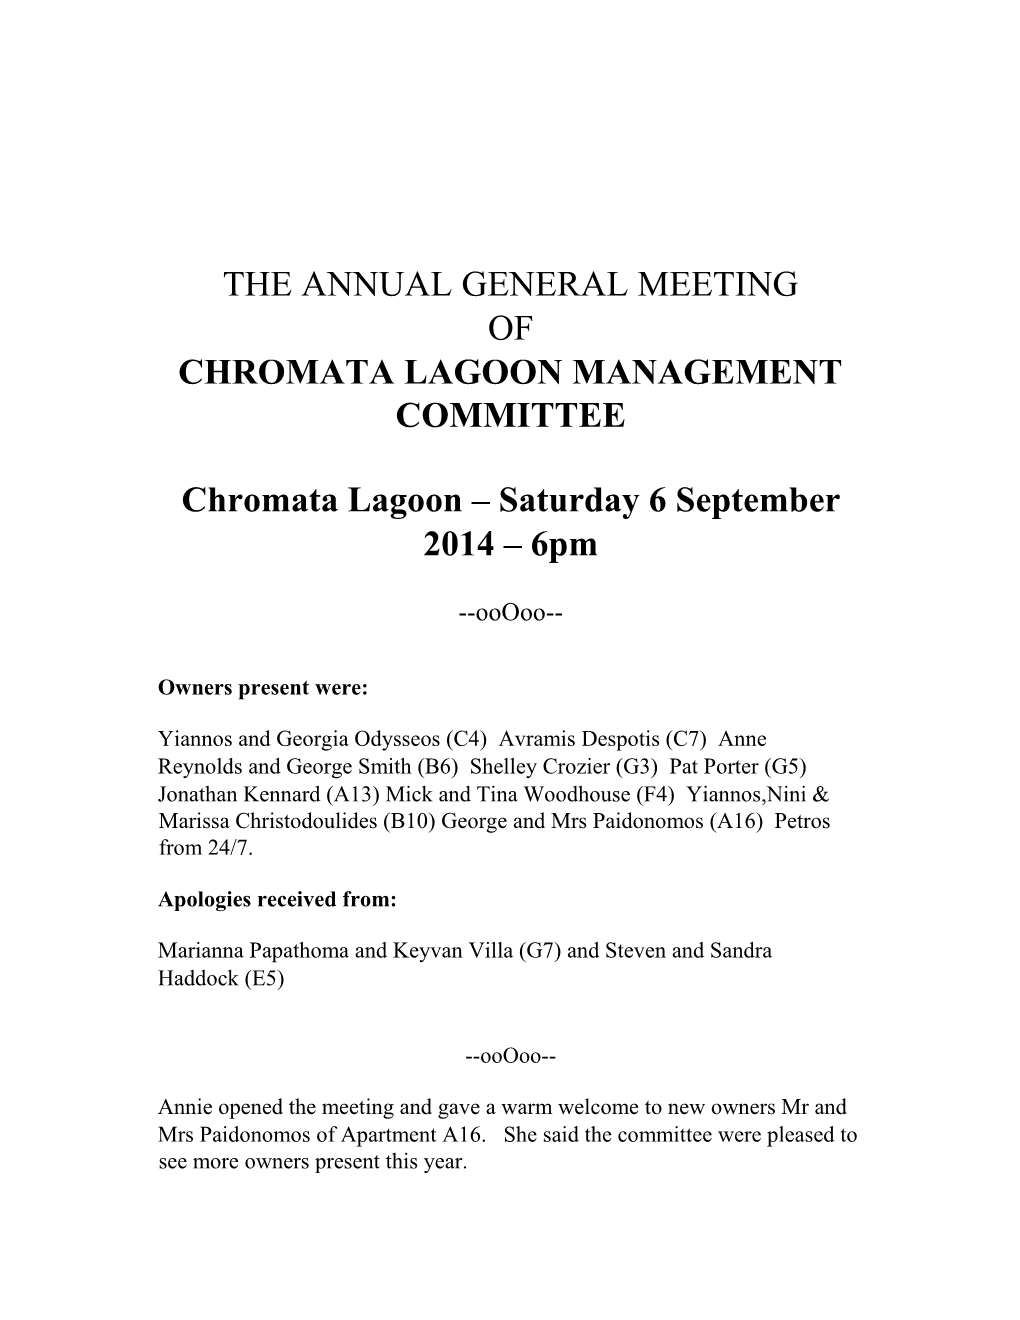 Chromata Lagoon Management Committee